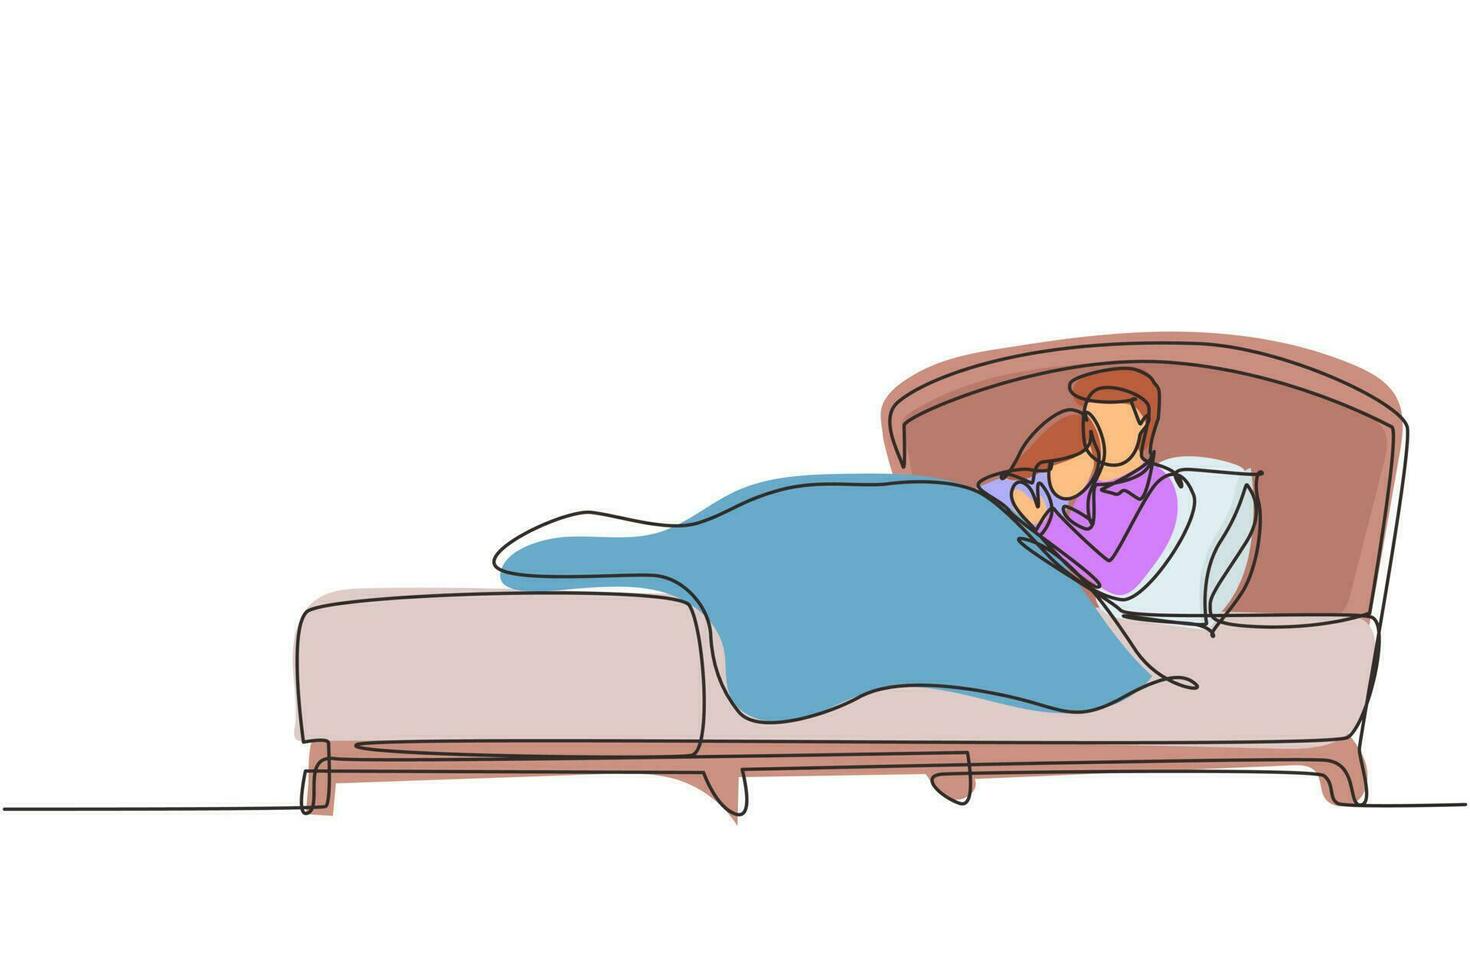 einzelne durchgehende linie, die ehefrau und ehemann umarmt und auf dem bett liegt. Süßes Paar, das während der Nachtruhe zusammen im Bett schläft. romantisches Paar, das sich nachts ausruht. eine linie zeichnen grafikdesignvektor vektor